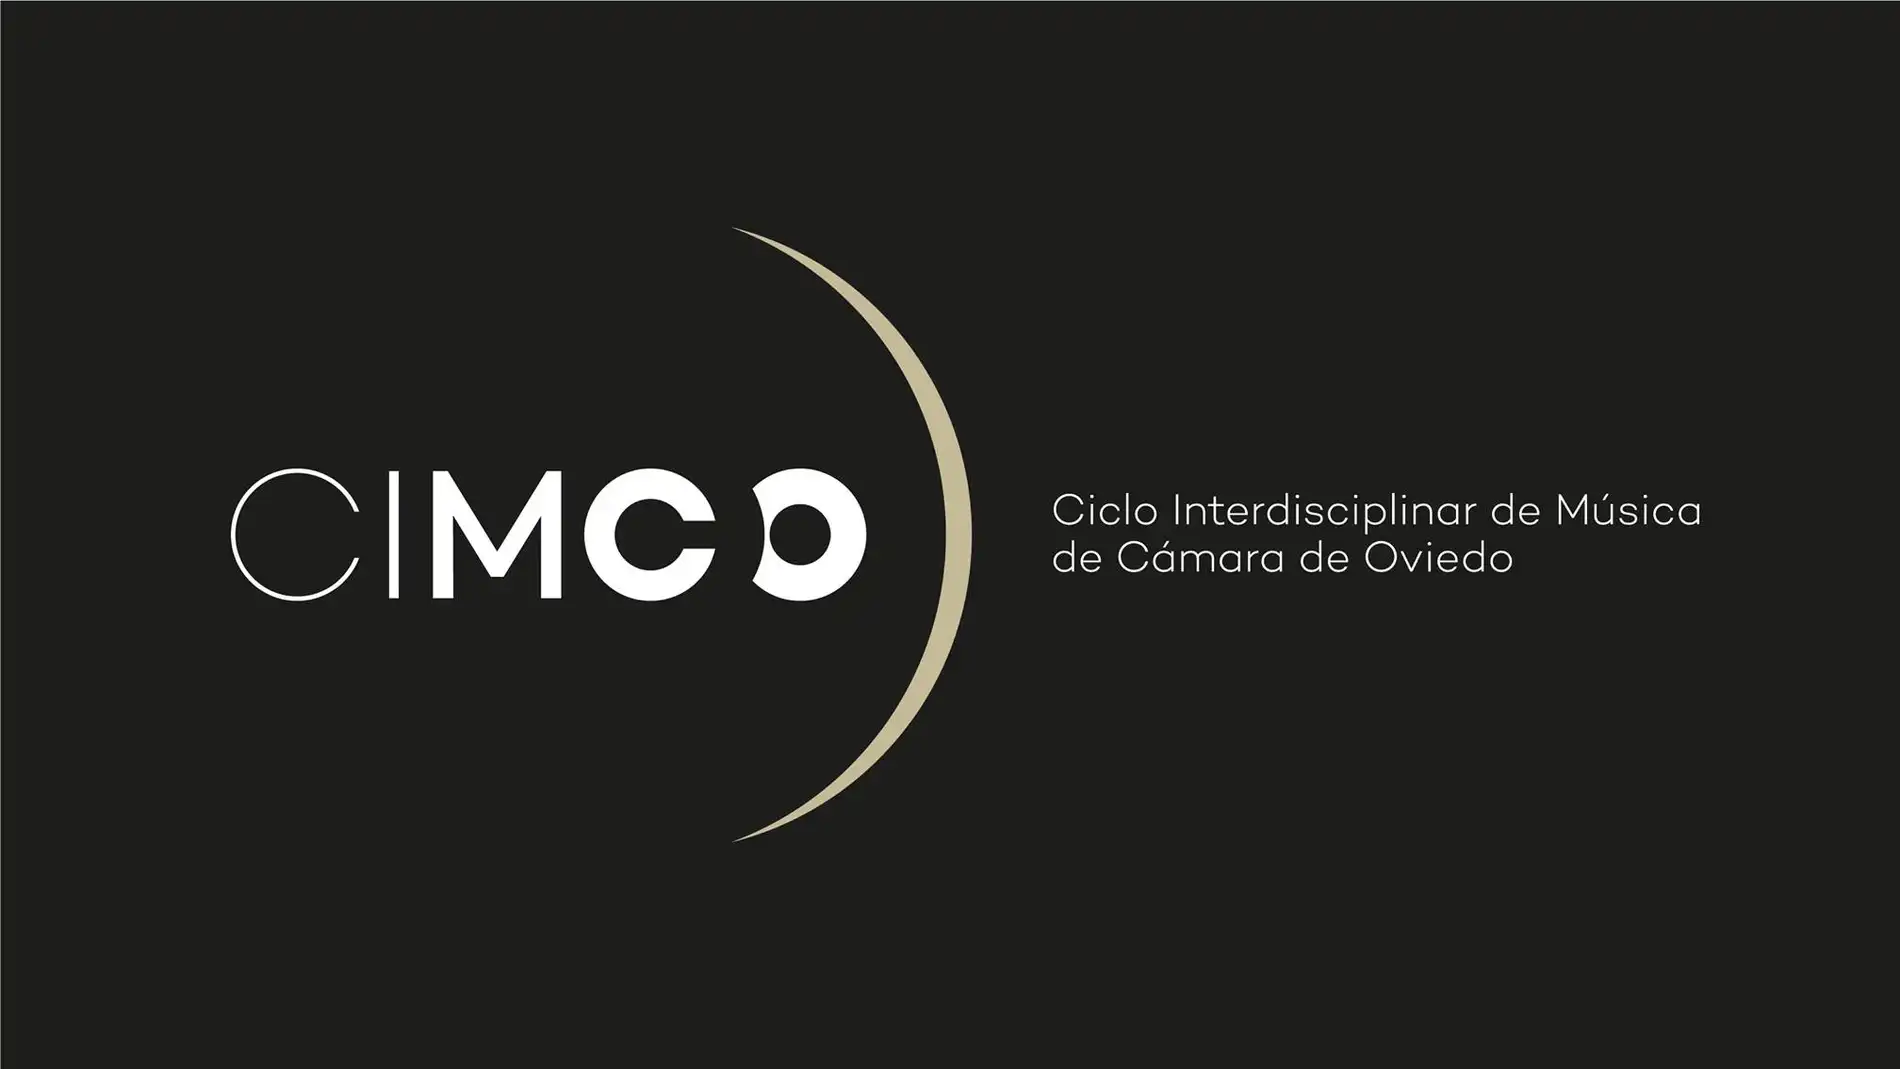 Nace CIMCO, el Ciclo Interdisciplinar de Música de Cámara de Oviedo, para conseguir nuevos públicos para la música clásica